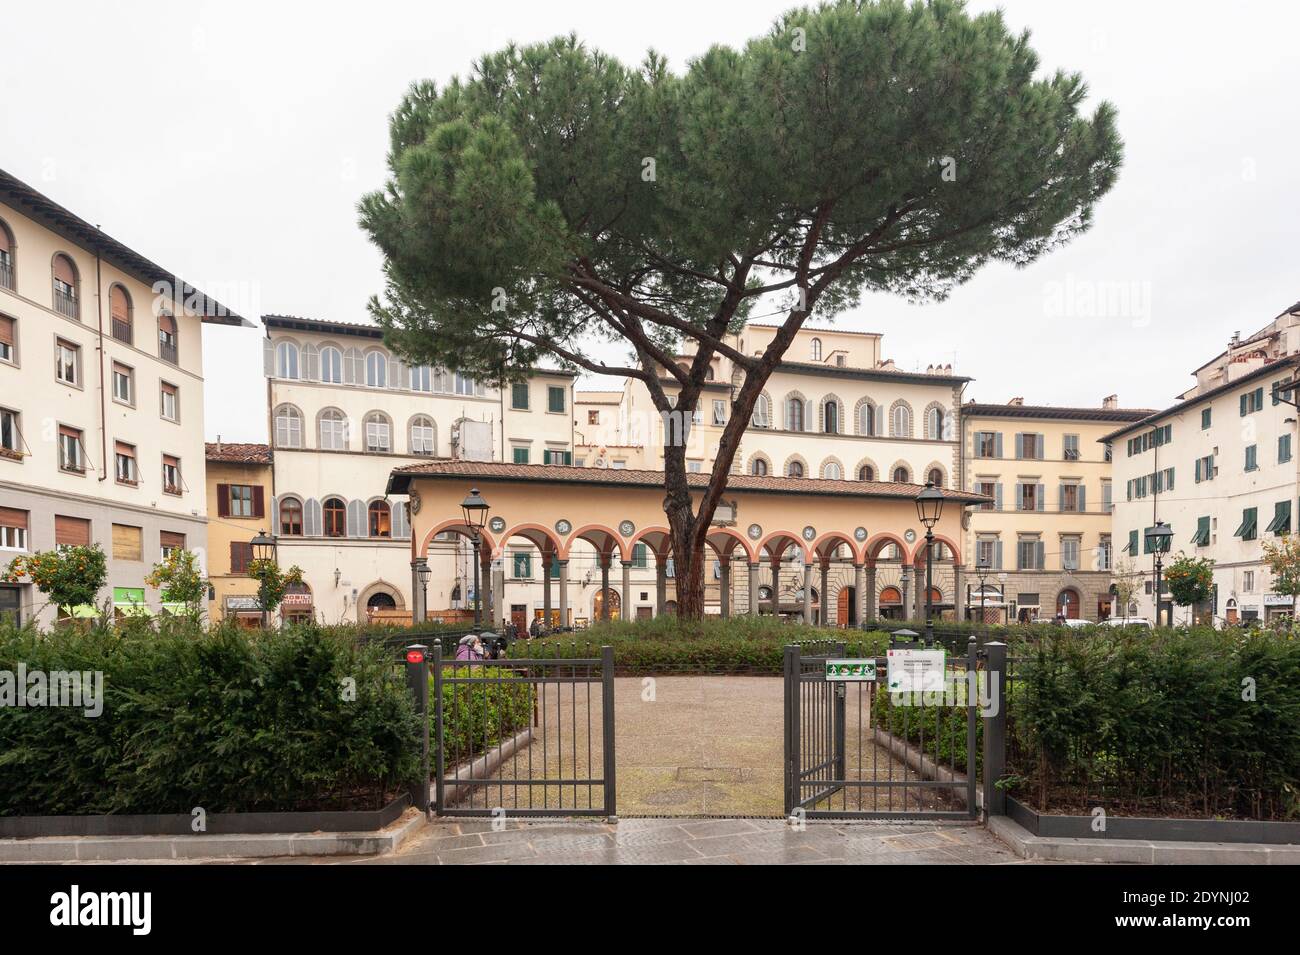 Firenze, Italia - 2020 dicembre 22: Piazza dei Ciompi è una piazza nel centro storico di Firenze. Un grande vecchio pino nel letto fiorito centrale. Foto Stock